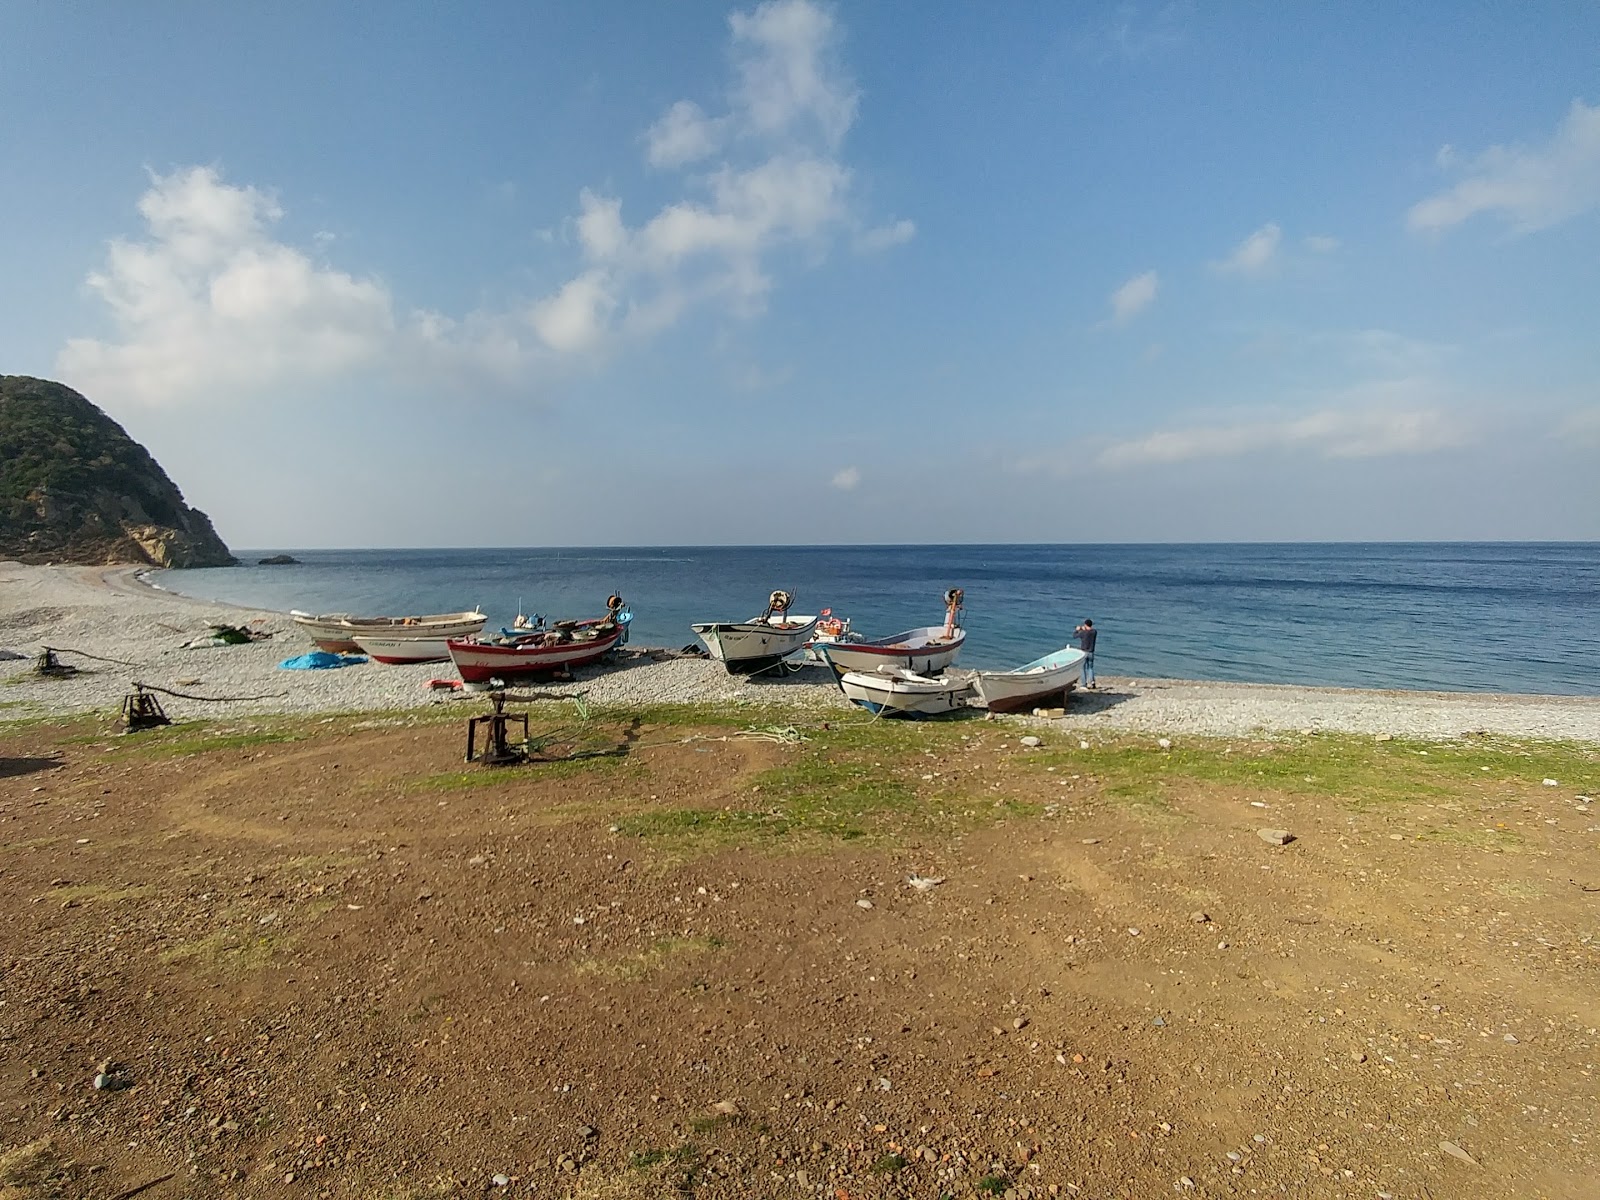 Karaagac Bay beach'in fotoğrafı geniş ile birlikte